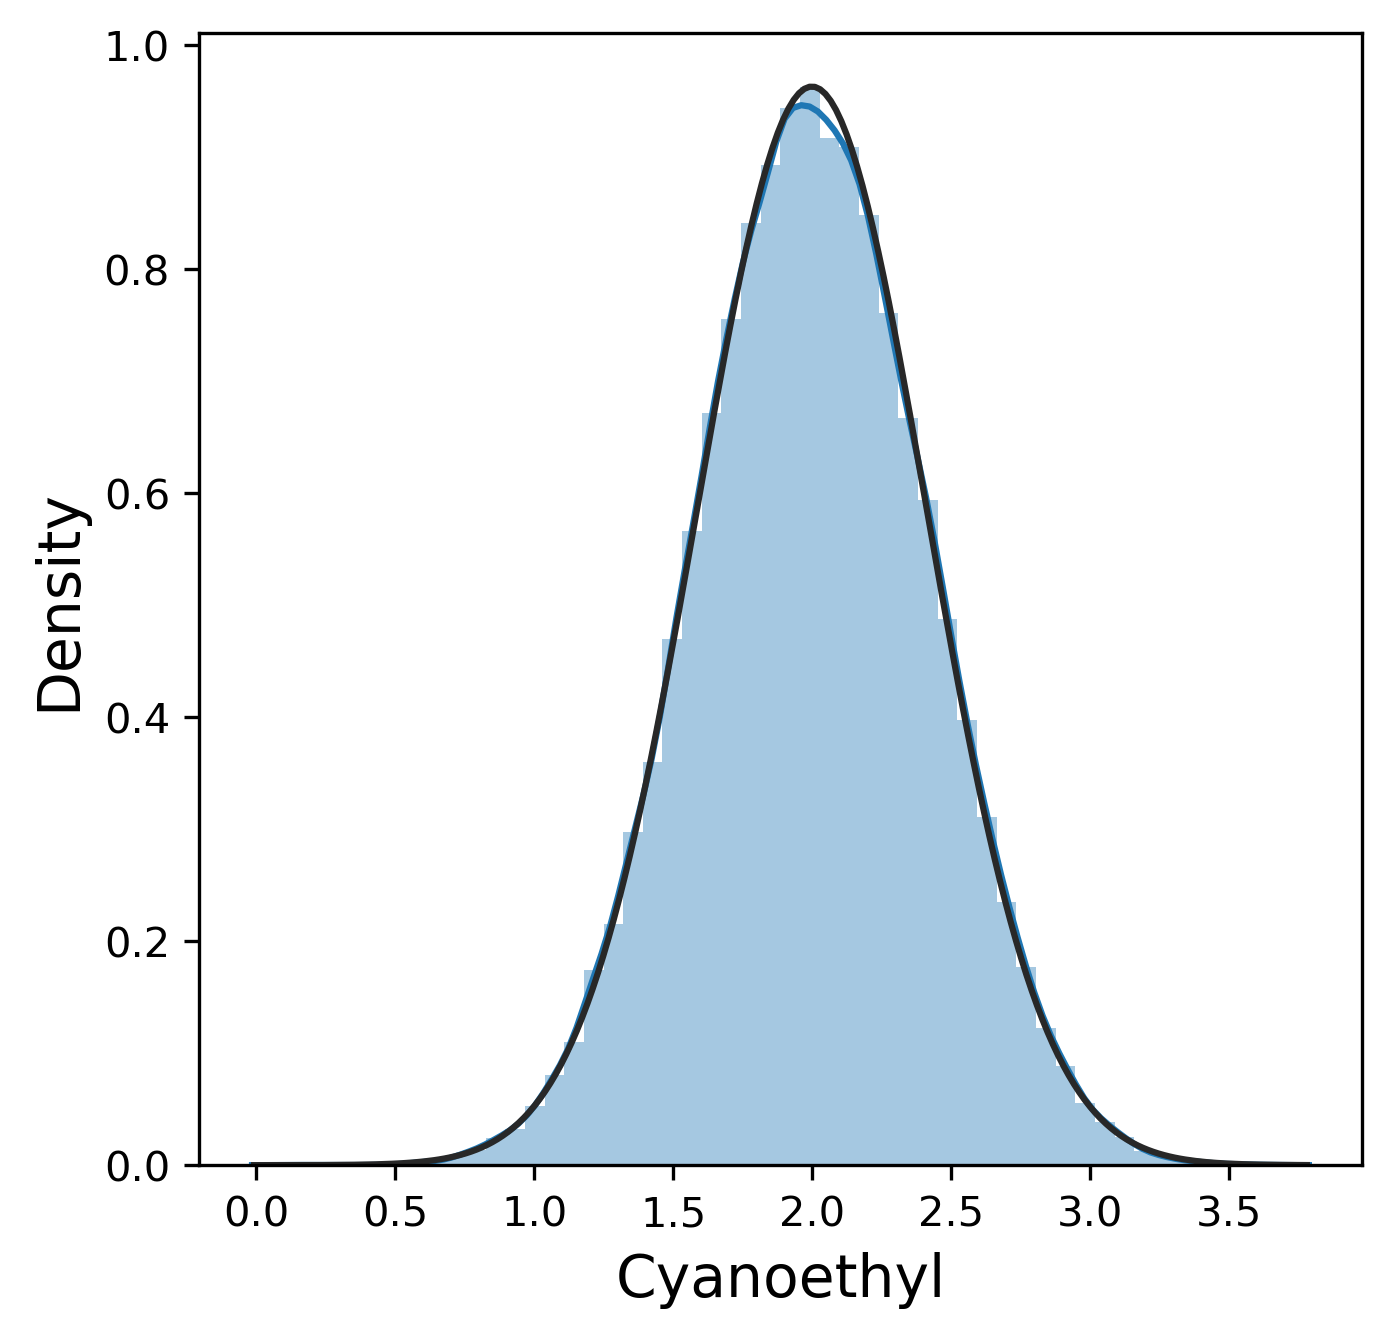 Distribution of the cyanoethyl impurity